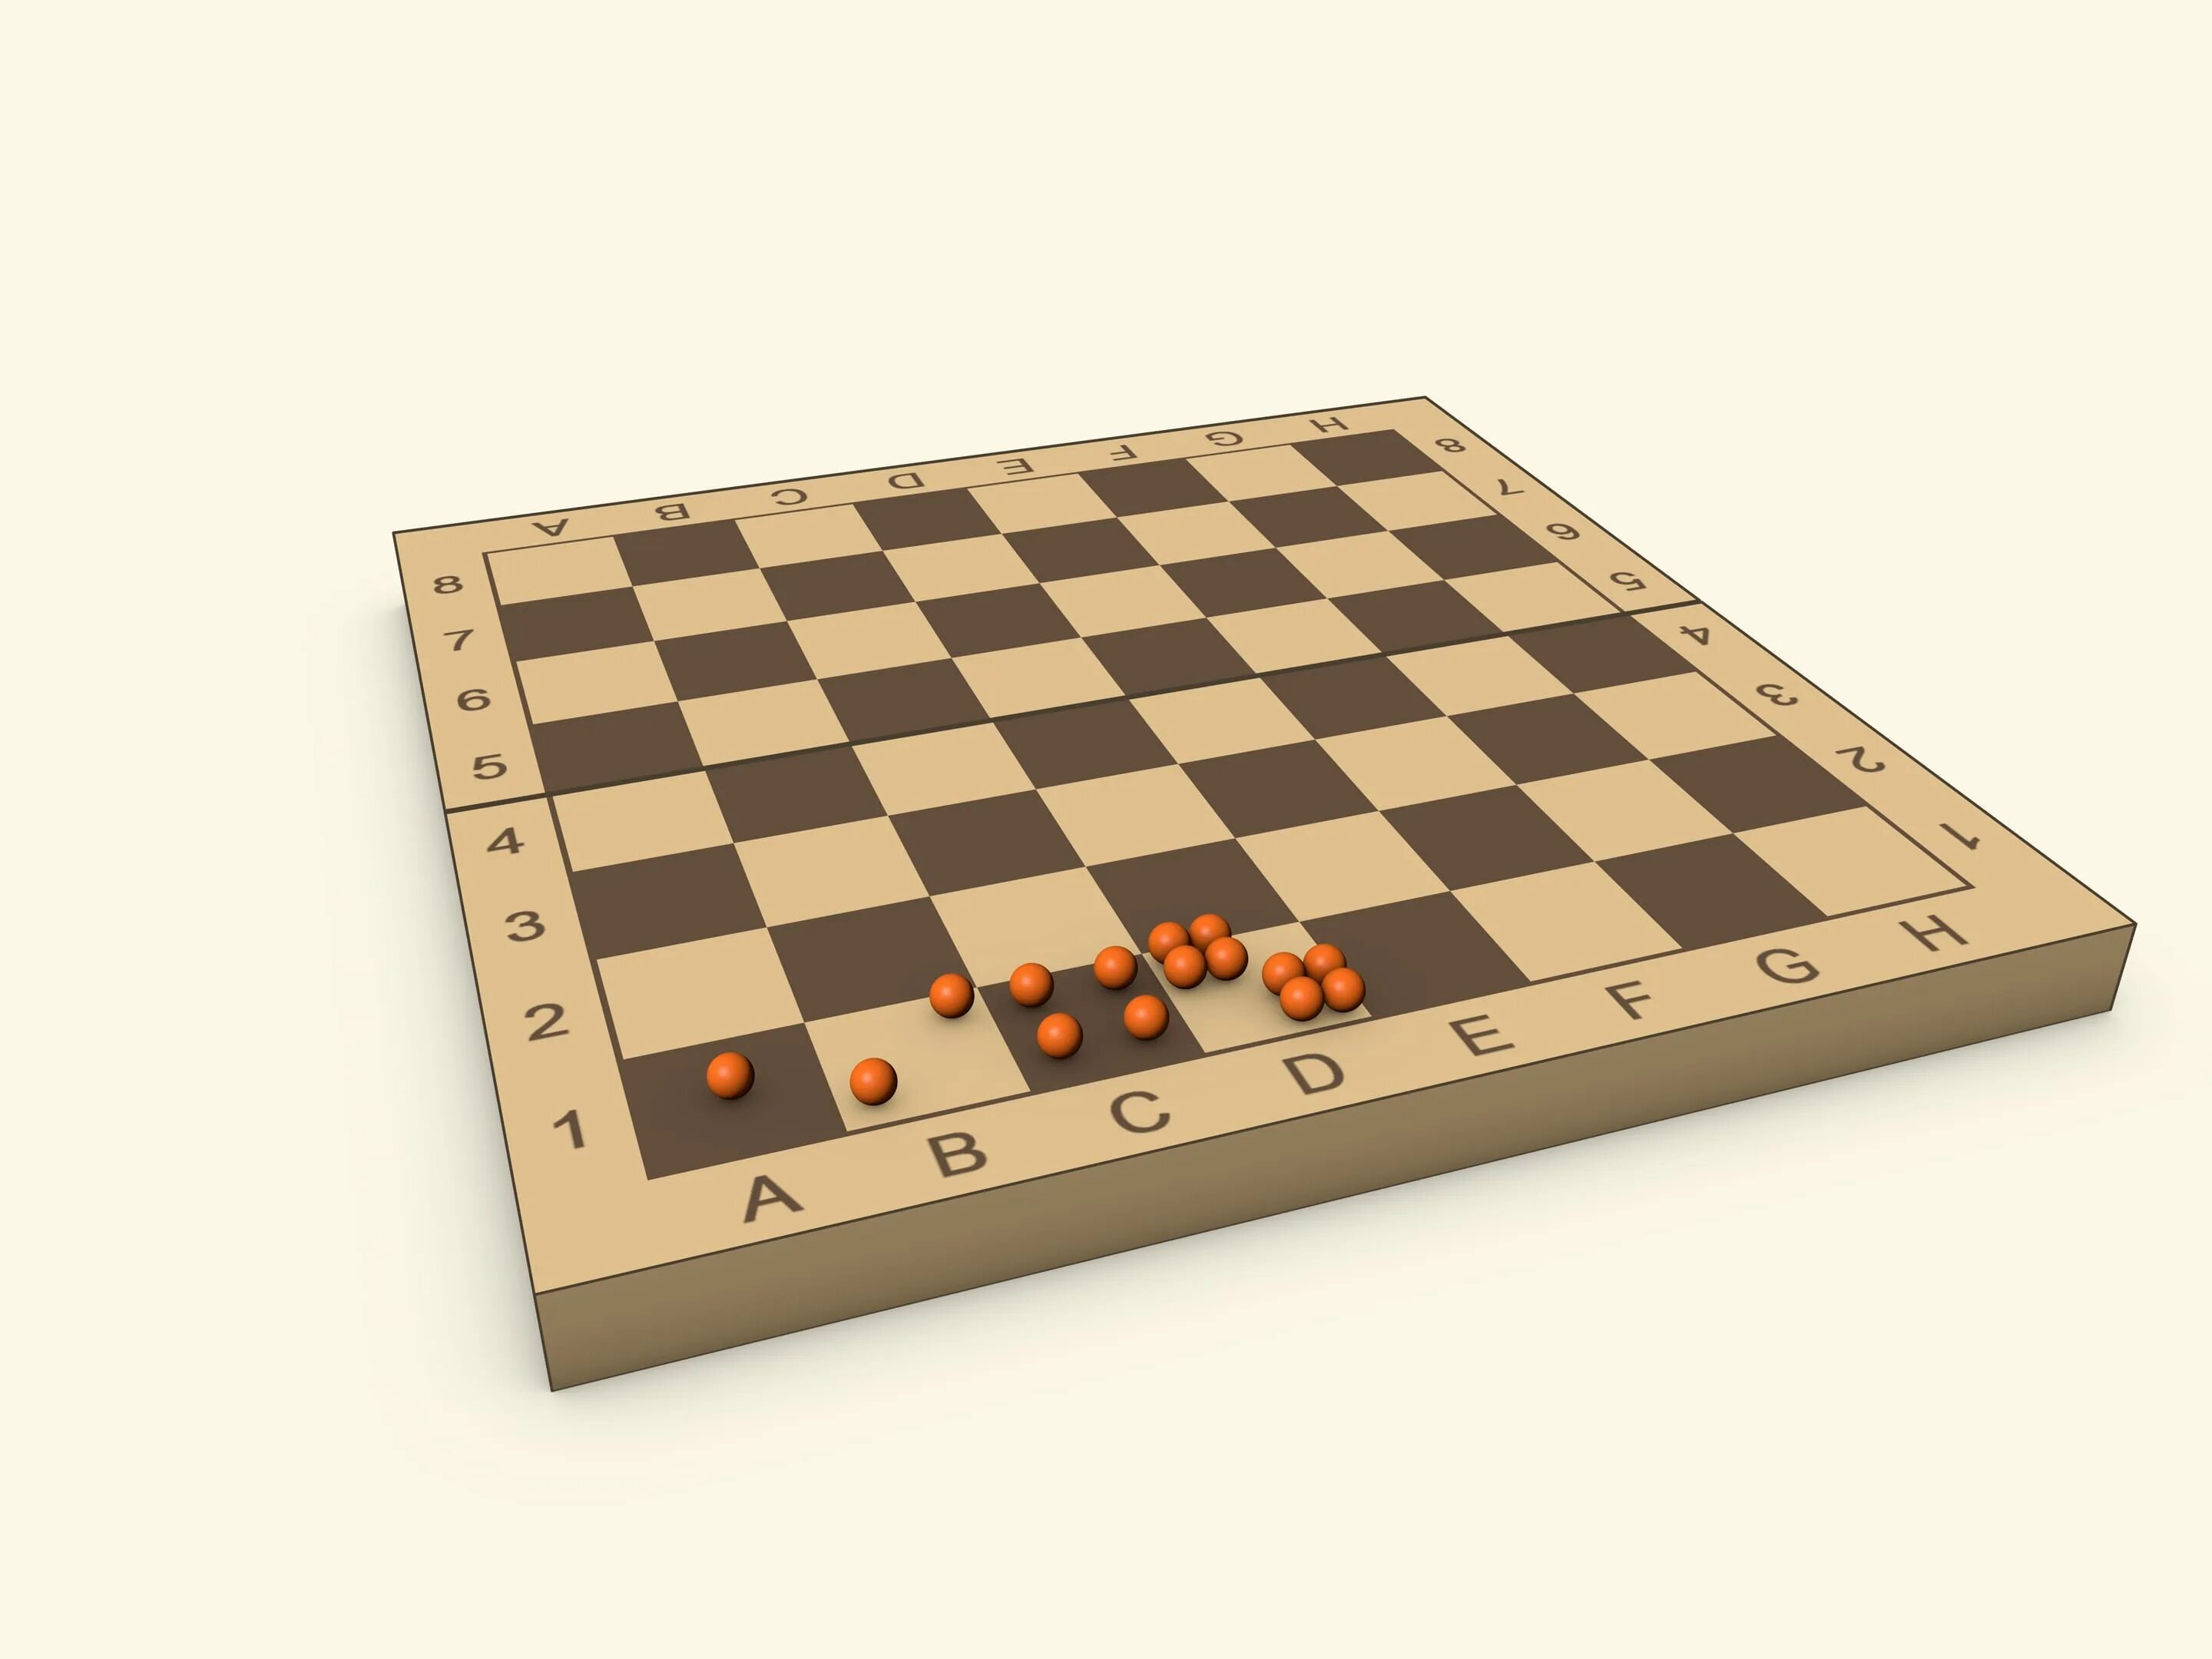 Шахматы в зернах Легенда Геометрическая прогрессия. Математические шахматы. Шахматная доска для детей. Задача о зёрнах на шахматной доске.